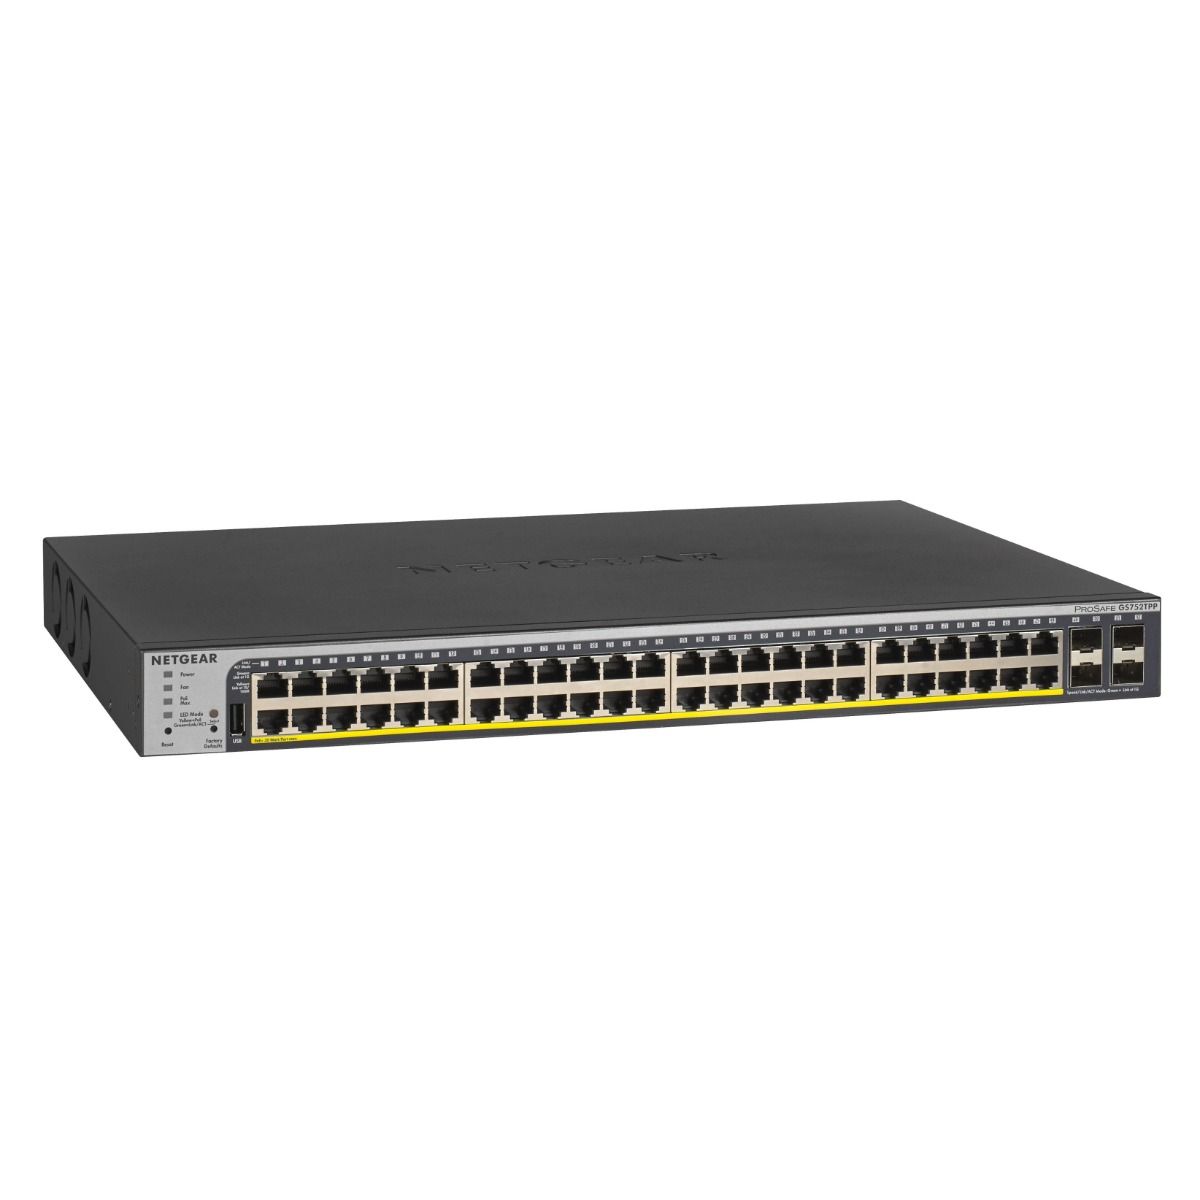 NETGEAR GS752TPP 52 Port PoE Gigabit Ethernet Smart Switch